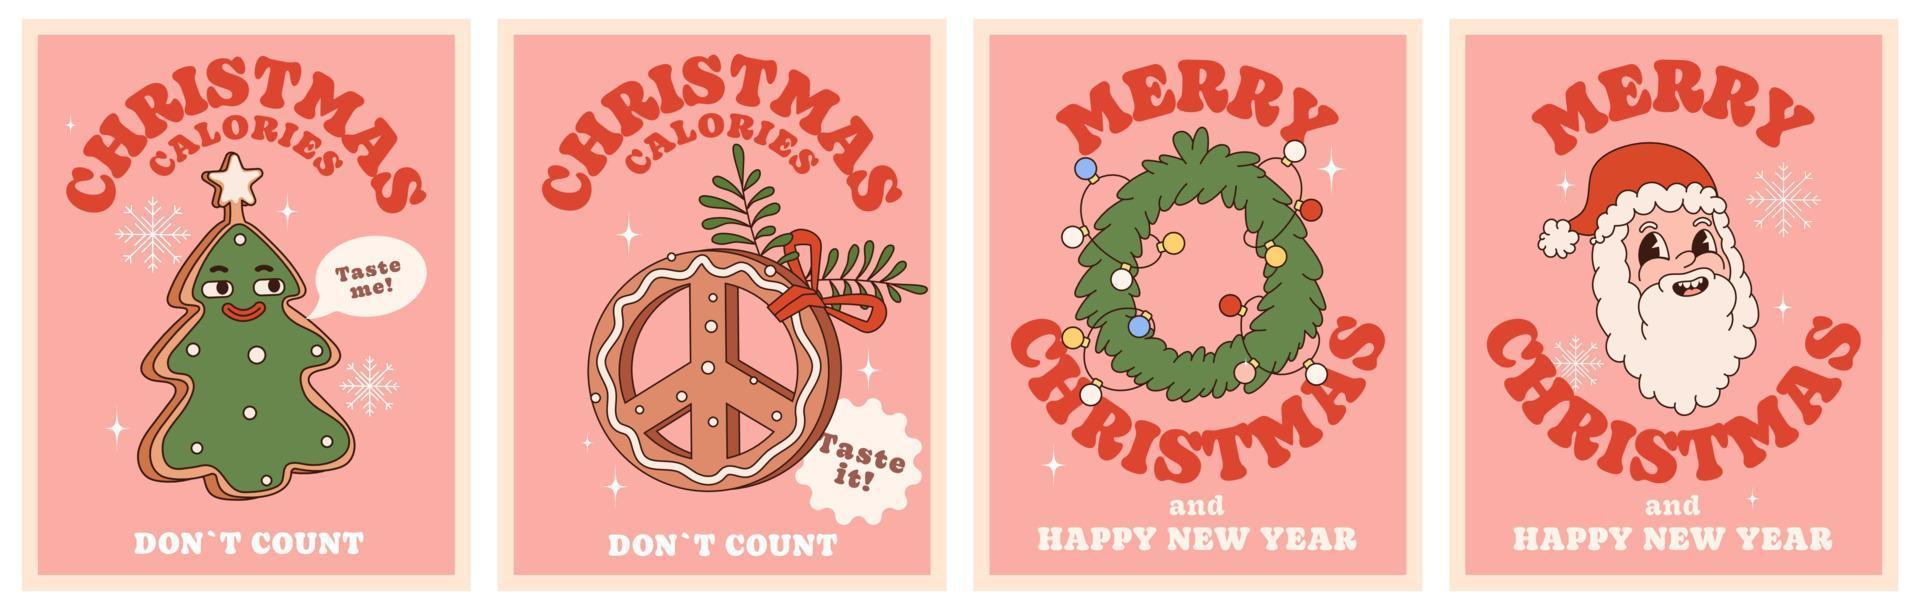 Kerstmis calorieën niet doen graaf. vrolijk Kerstmis en gelukkig nieuw jaar. groovy hippie poster reeks met peperkoek koekjes, de kerstman, net lauwerkrans. trenig stijl met een jaren 70 gevoel. vector